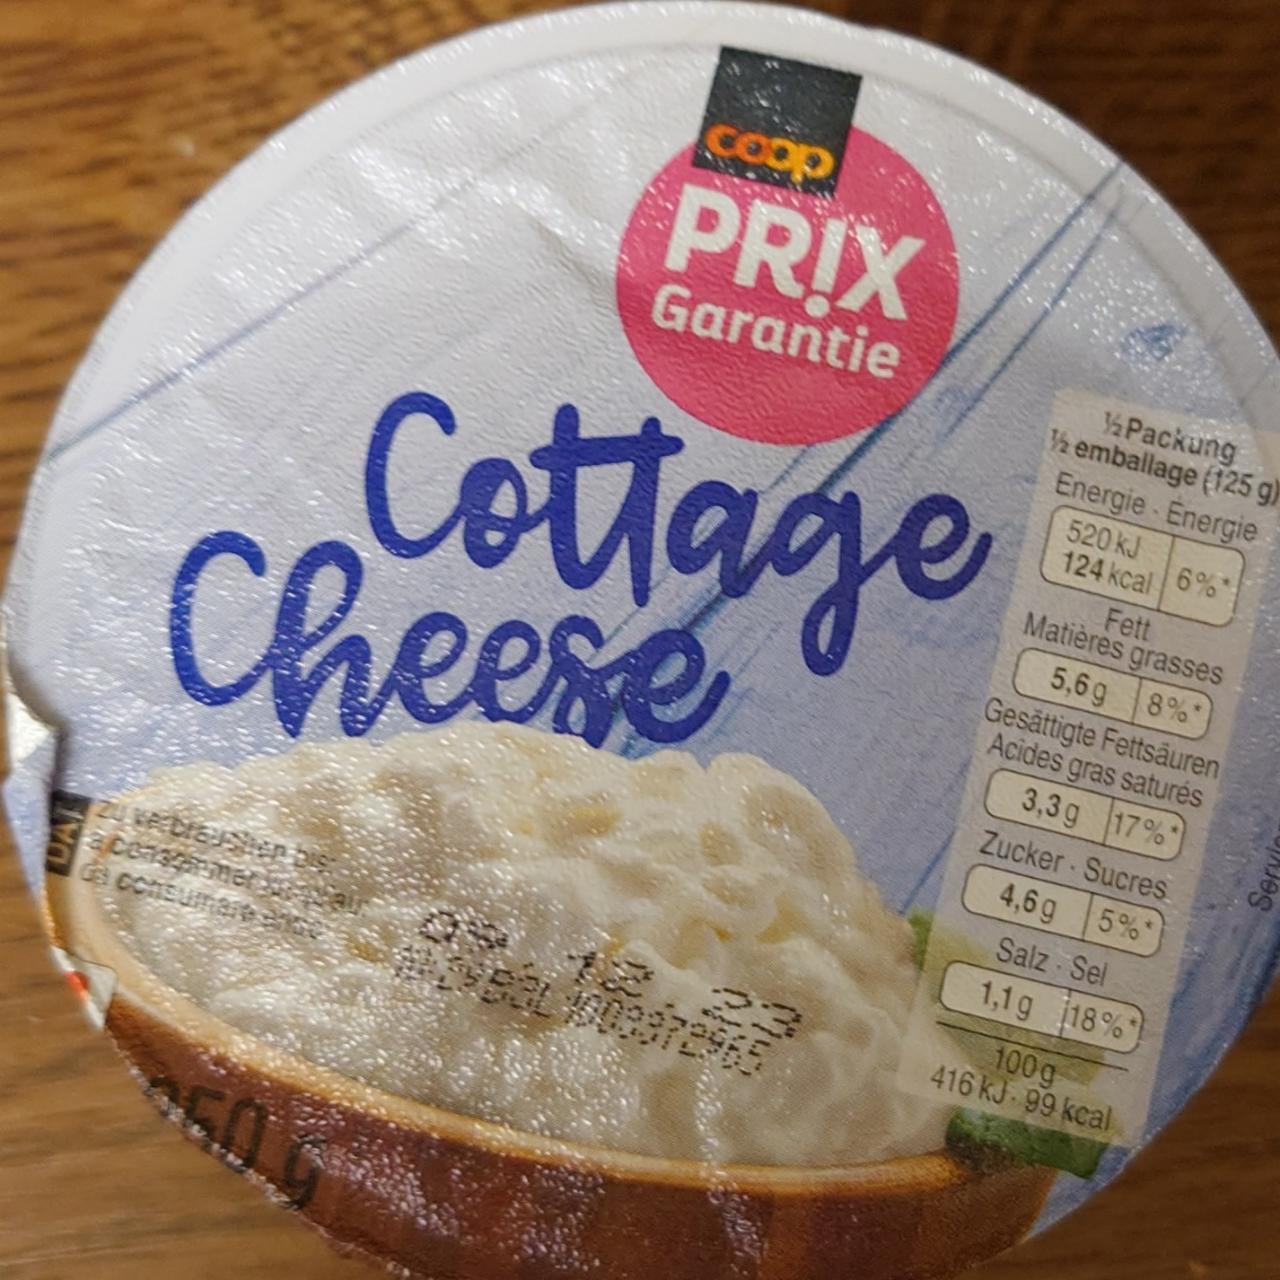 Fotografie - Cottage Cheese Coop Prix Garantie